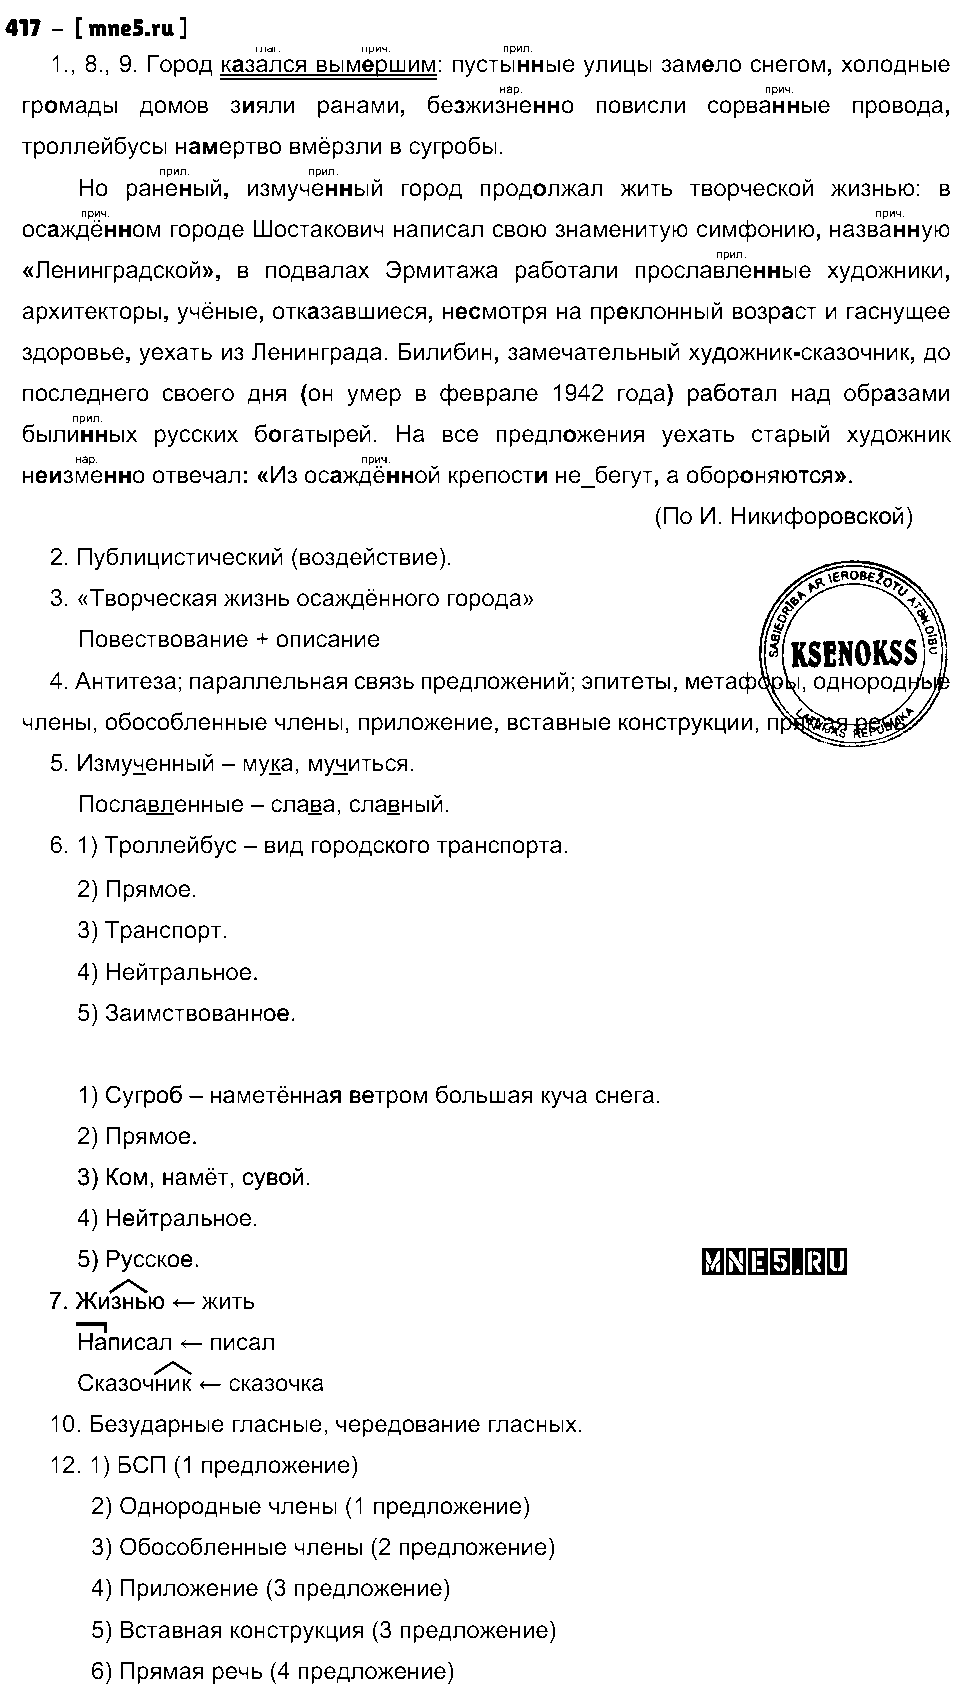 ГДЗ Русский язык 8 класс - 417